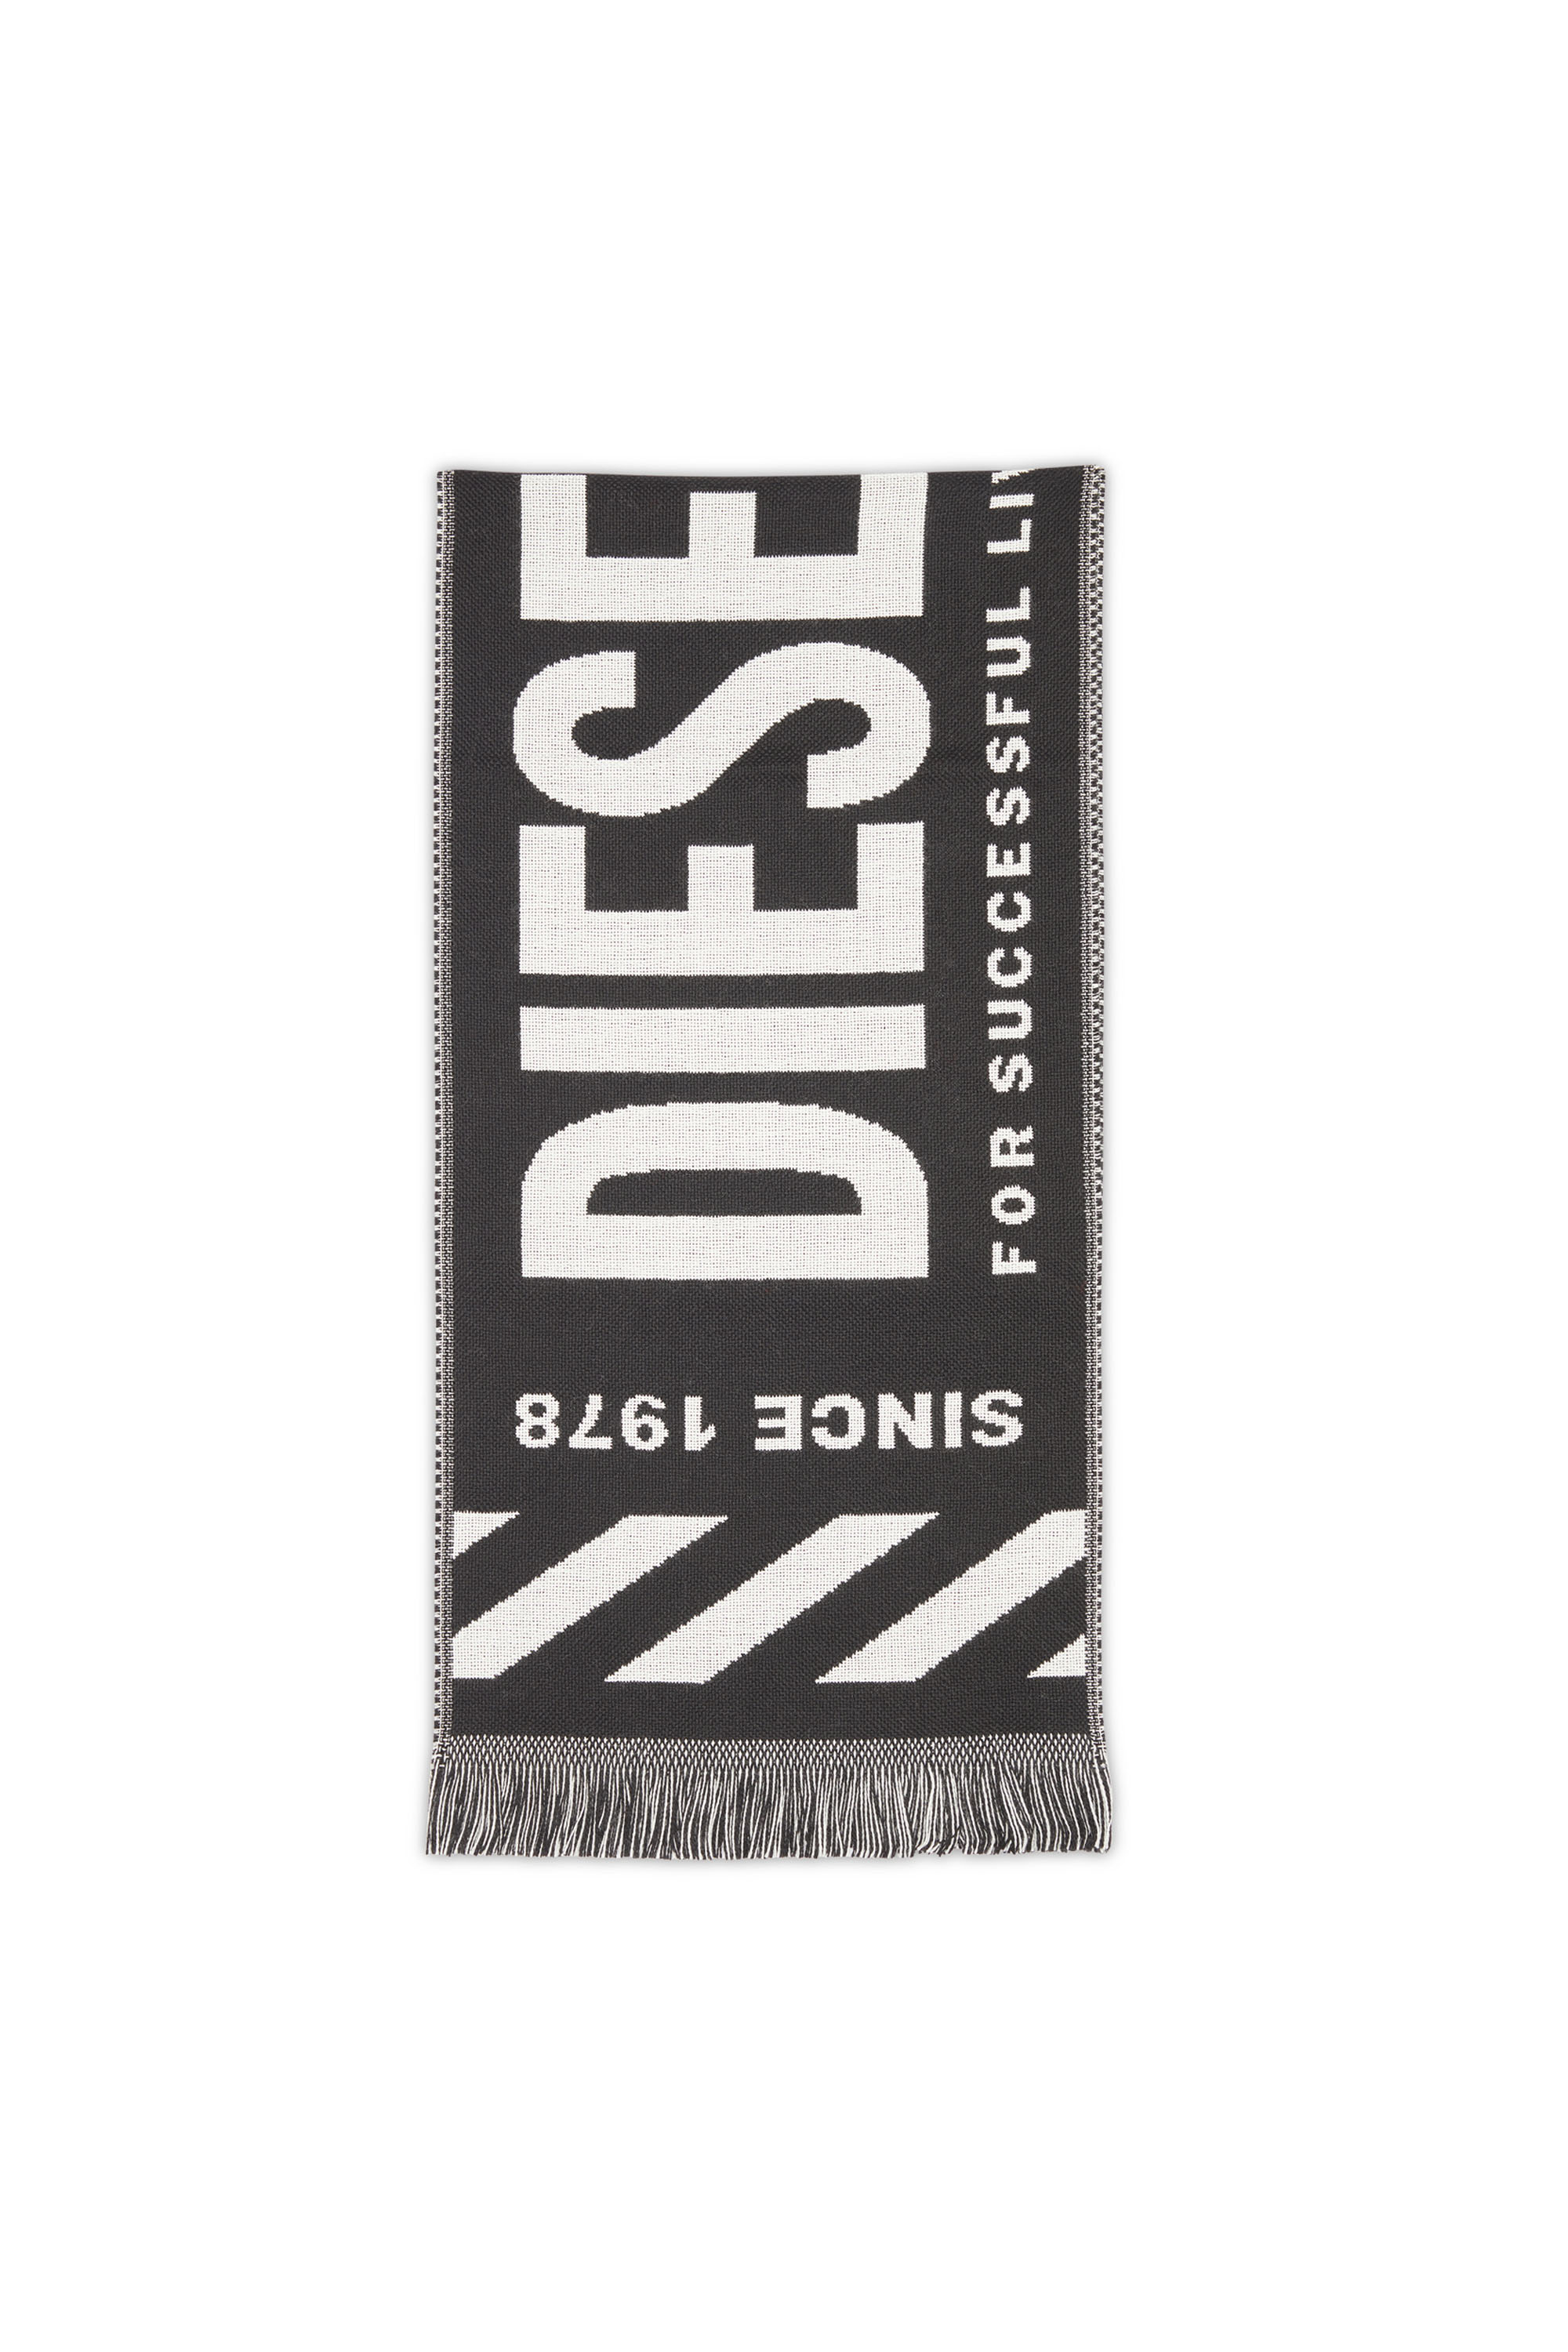 Diesel - S-BISC, Black - Image 1